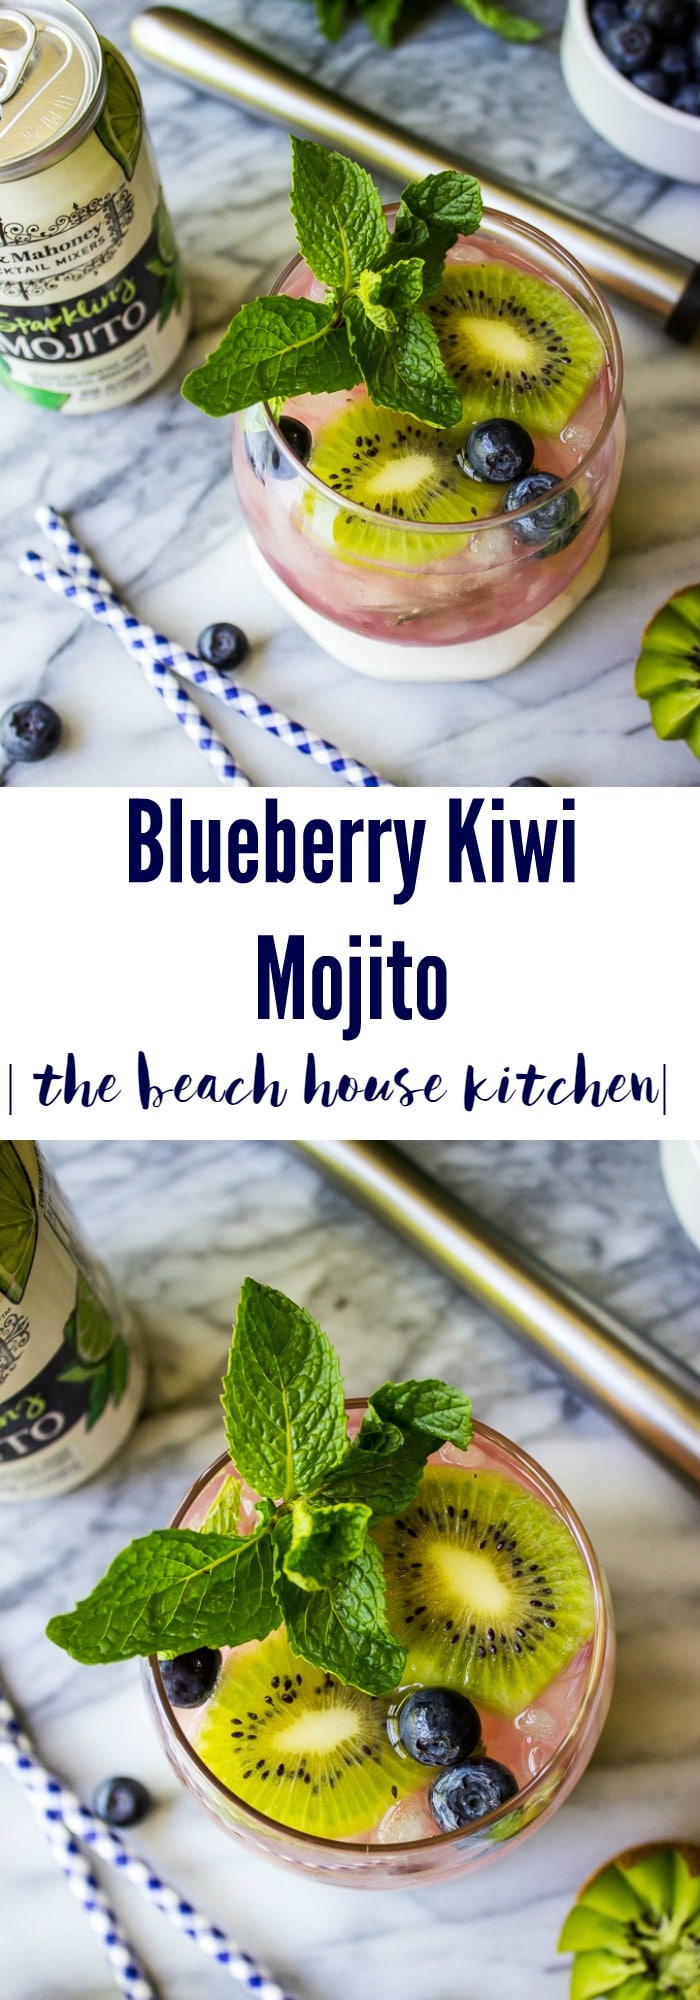 Blueberry Kiwi Mojito